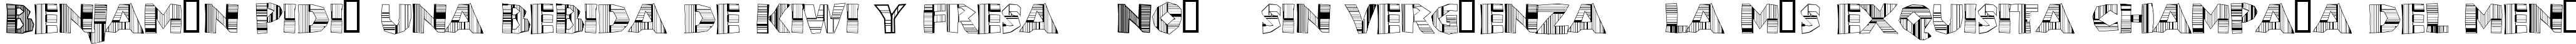 Пример написания шрифтом ChunkoBlockoDroppoCapo текста на испанском